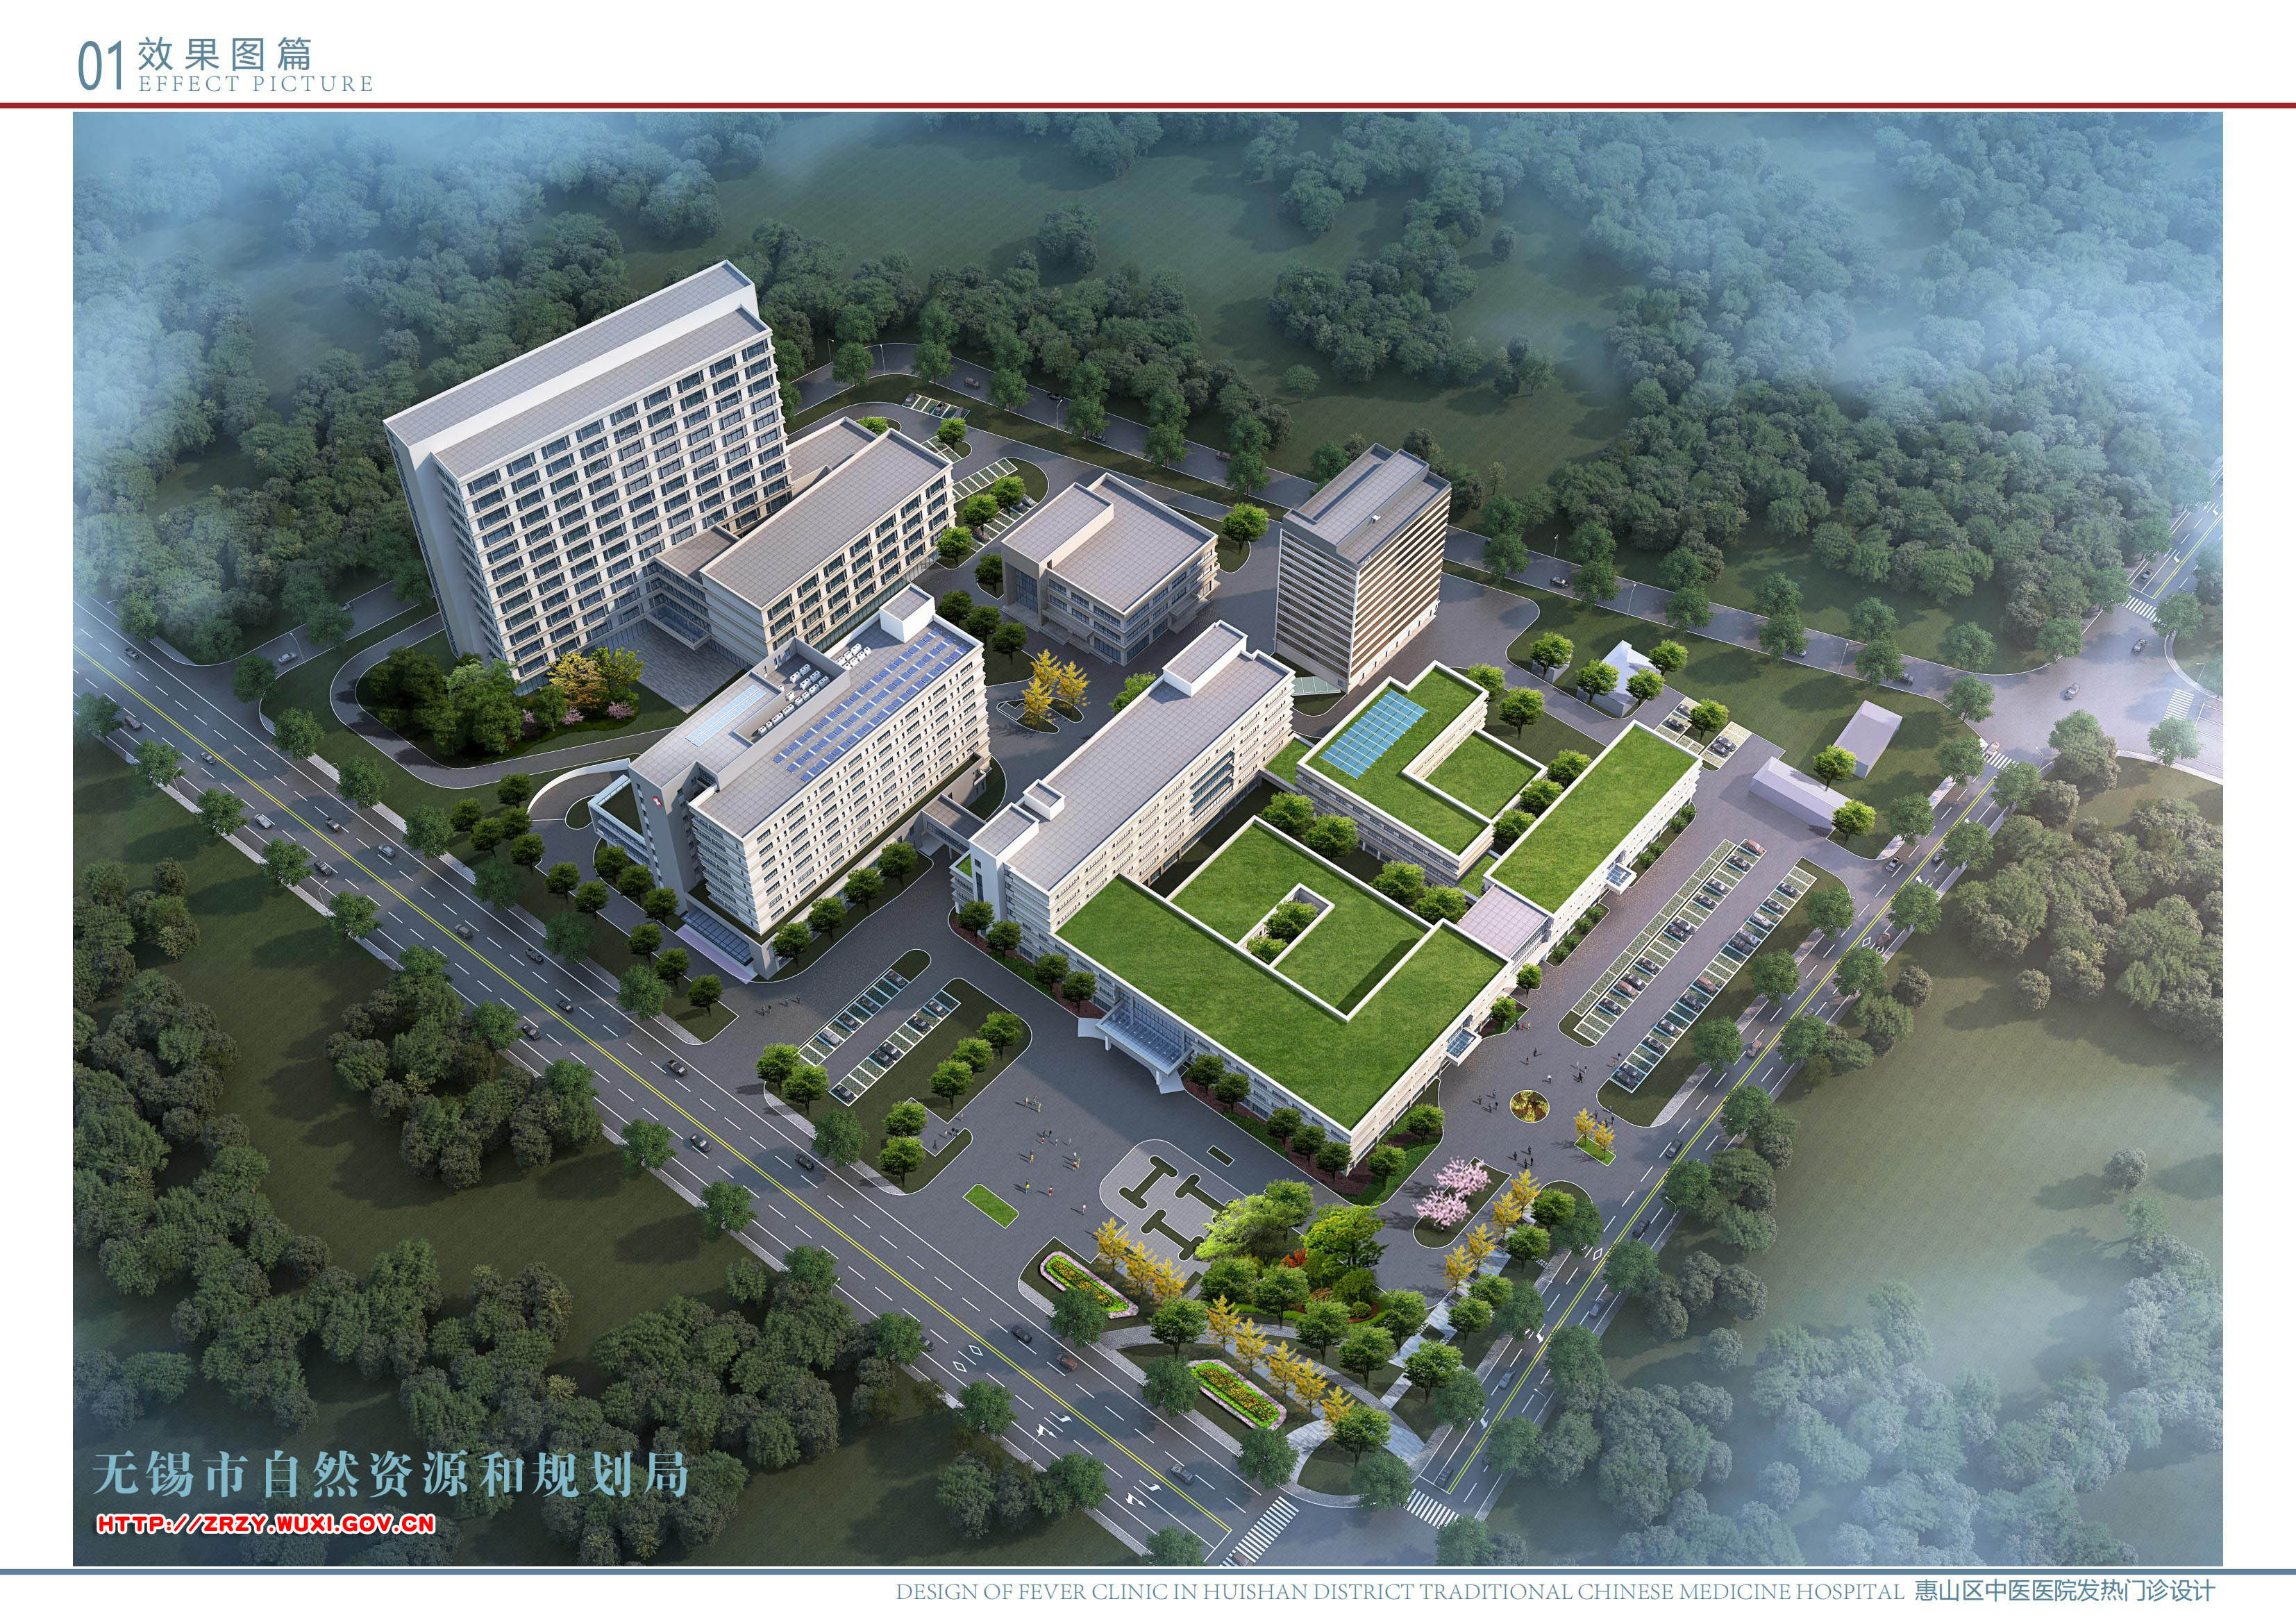 无锡市惠山区中医医院三期新建工程规划设计方案审查批前公示